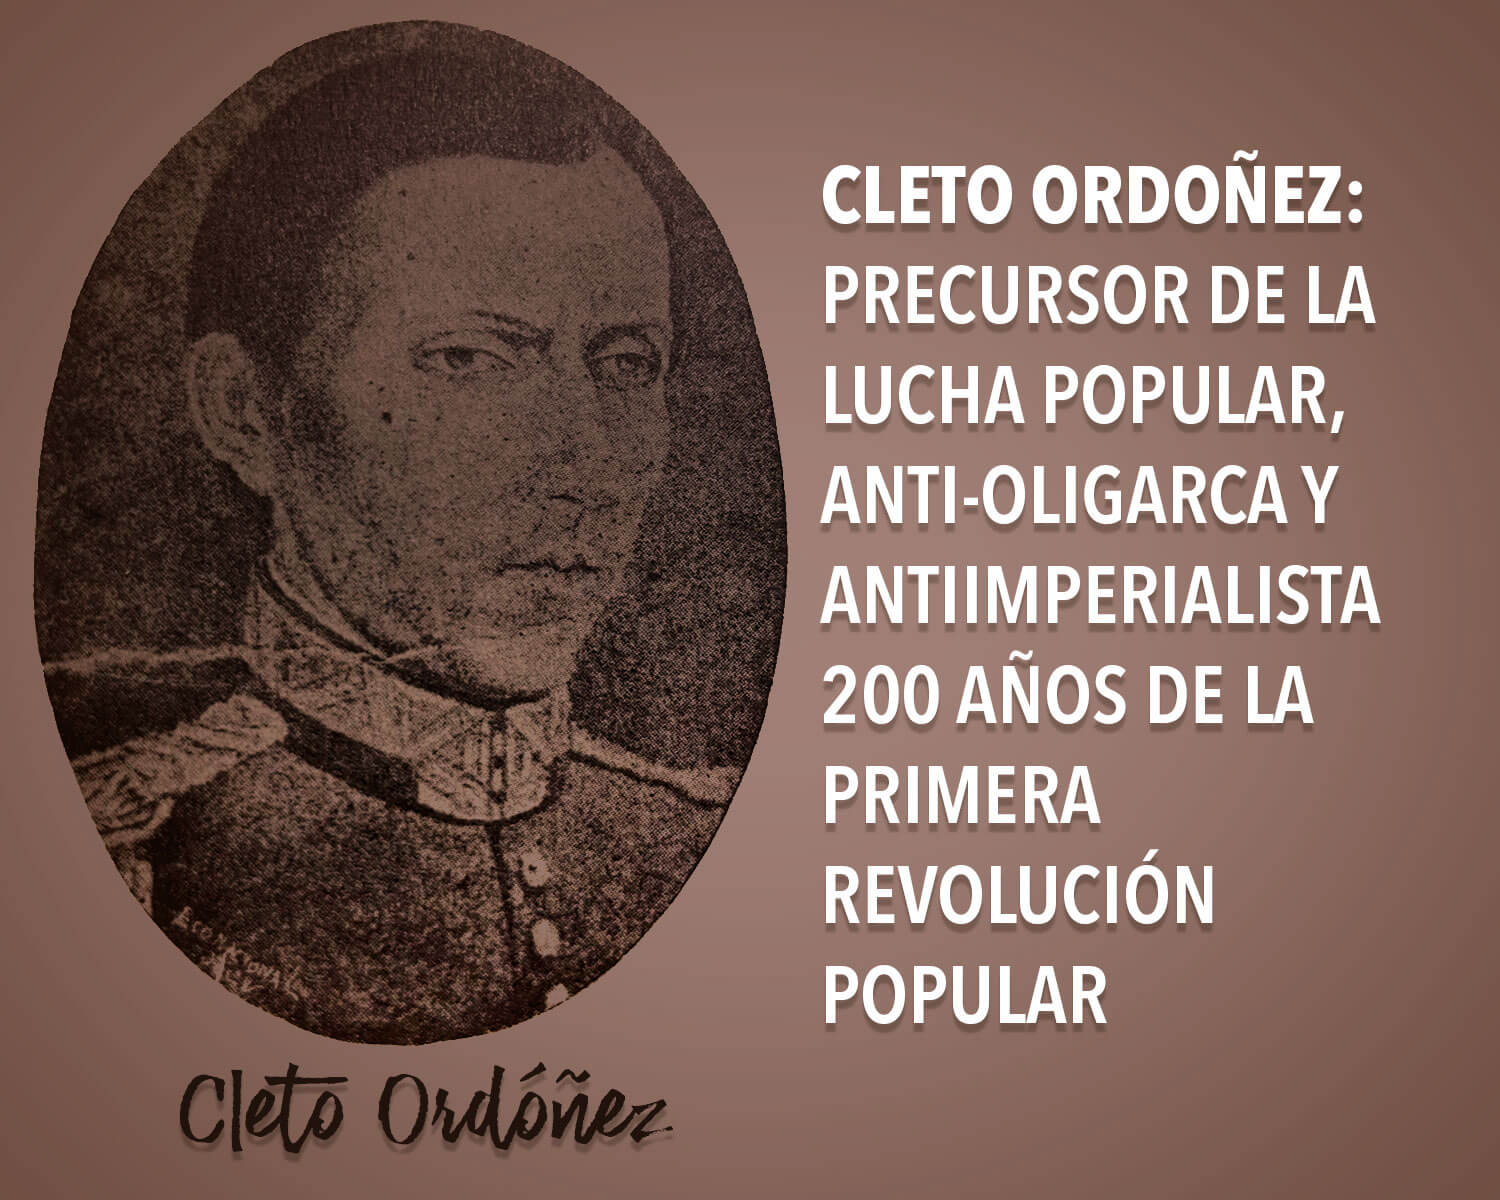 Cleto Ordoñez: Precursor de la lucha popular, anti-oligarca y antiimperialista Managua. Por Francisco Bautista Lara. 